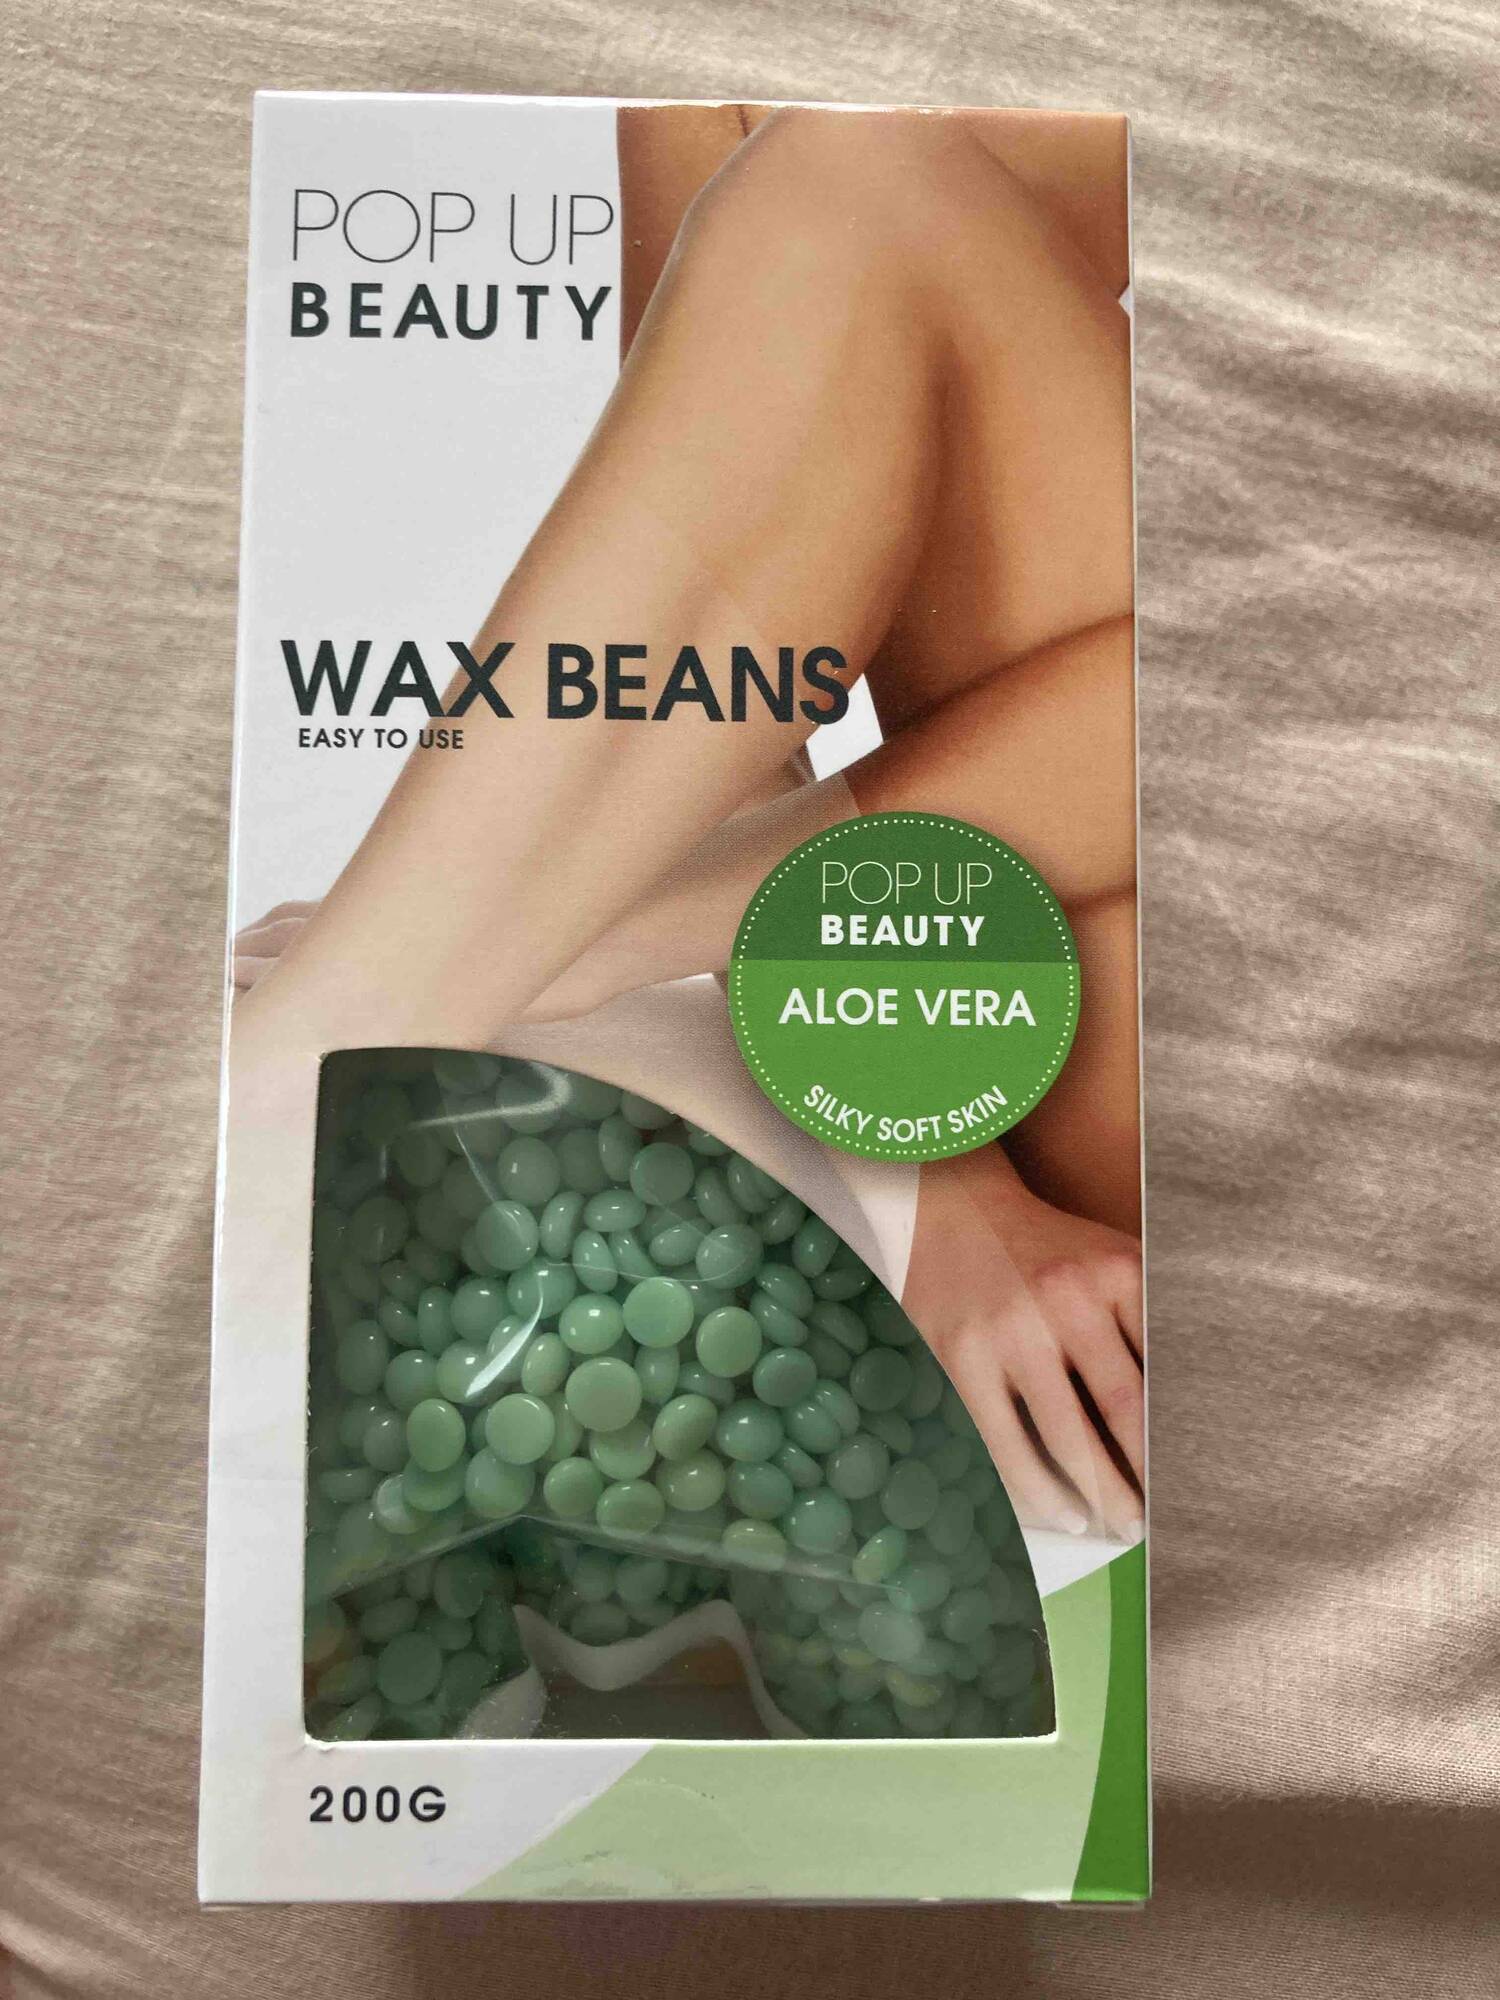 POP UP BEAUTY - Aloe vera - Wax beans easy to use